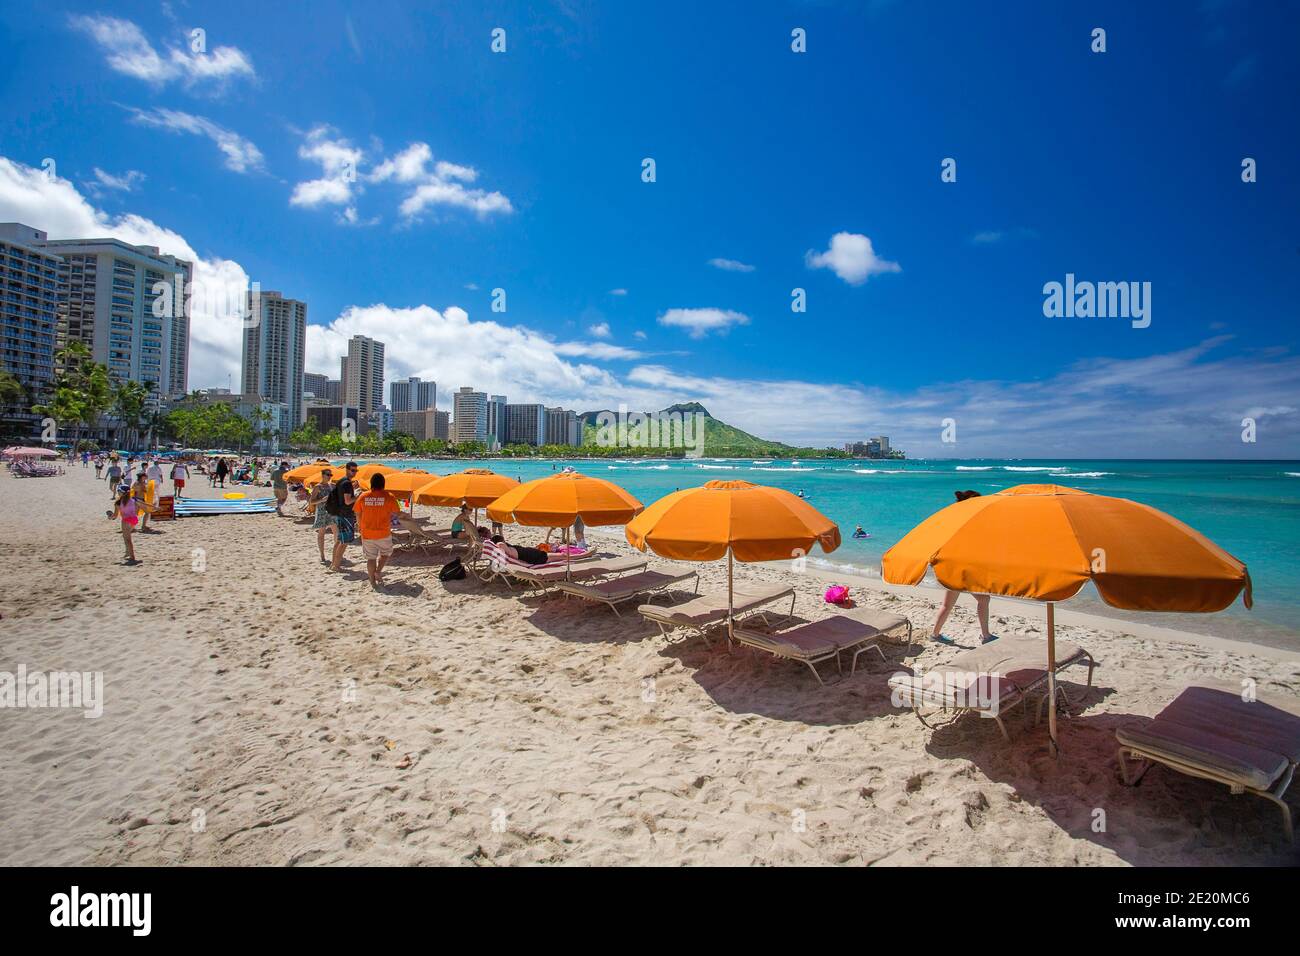 Ein Blick auf Liegestühle, Sonnenschirme und Touristen auf dem ikonischen Waikiki Strand mit Diamond Head hinter sich auf der Insel Oahu, Hawaii. Stockfoto